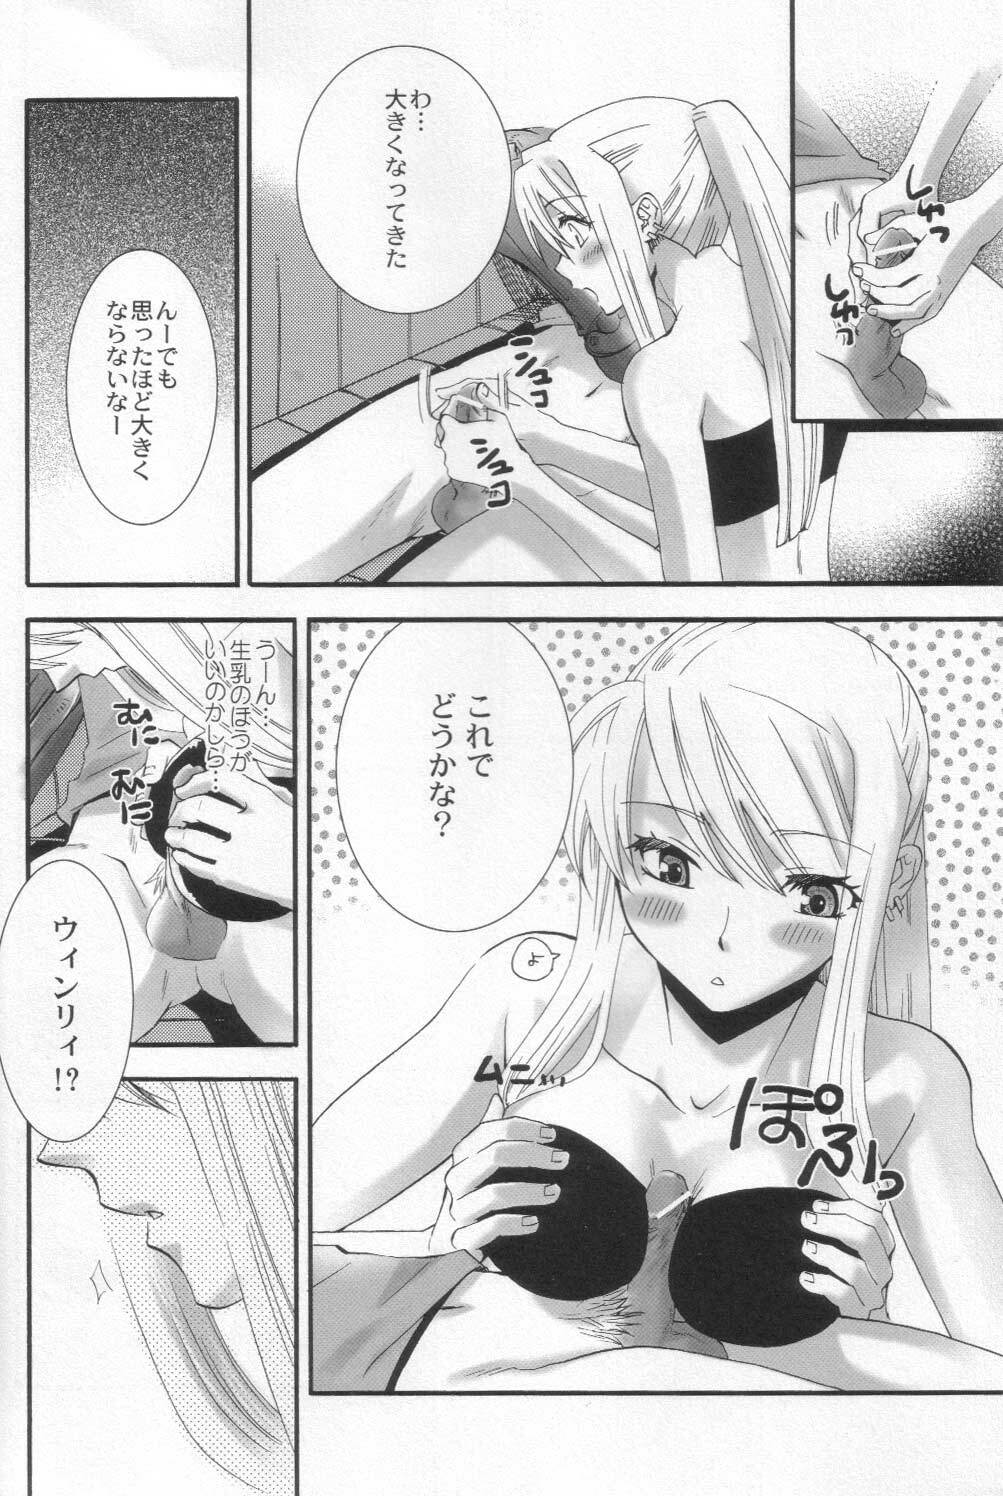 (SC24) [KITANOHITO (Kitano Urara)] Winry no Atelier (Fullmetal Alchemist) page 7 full